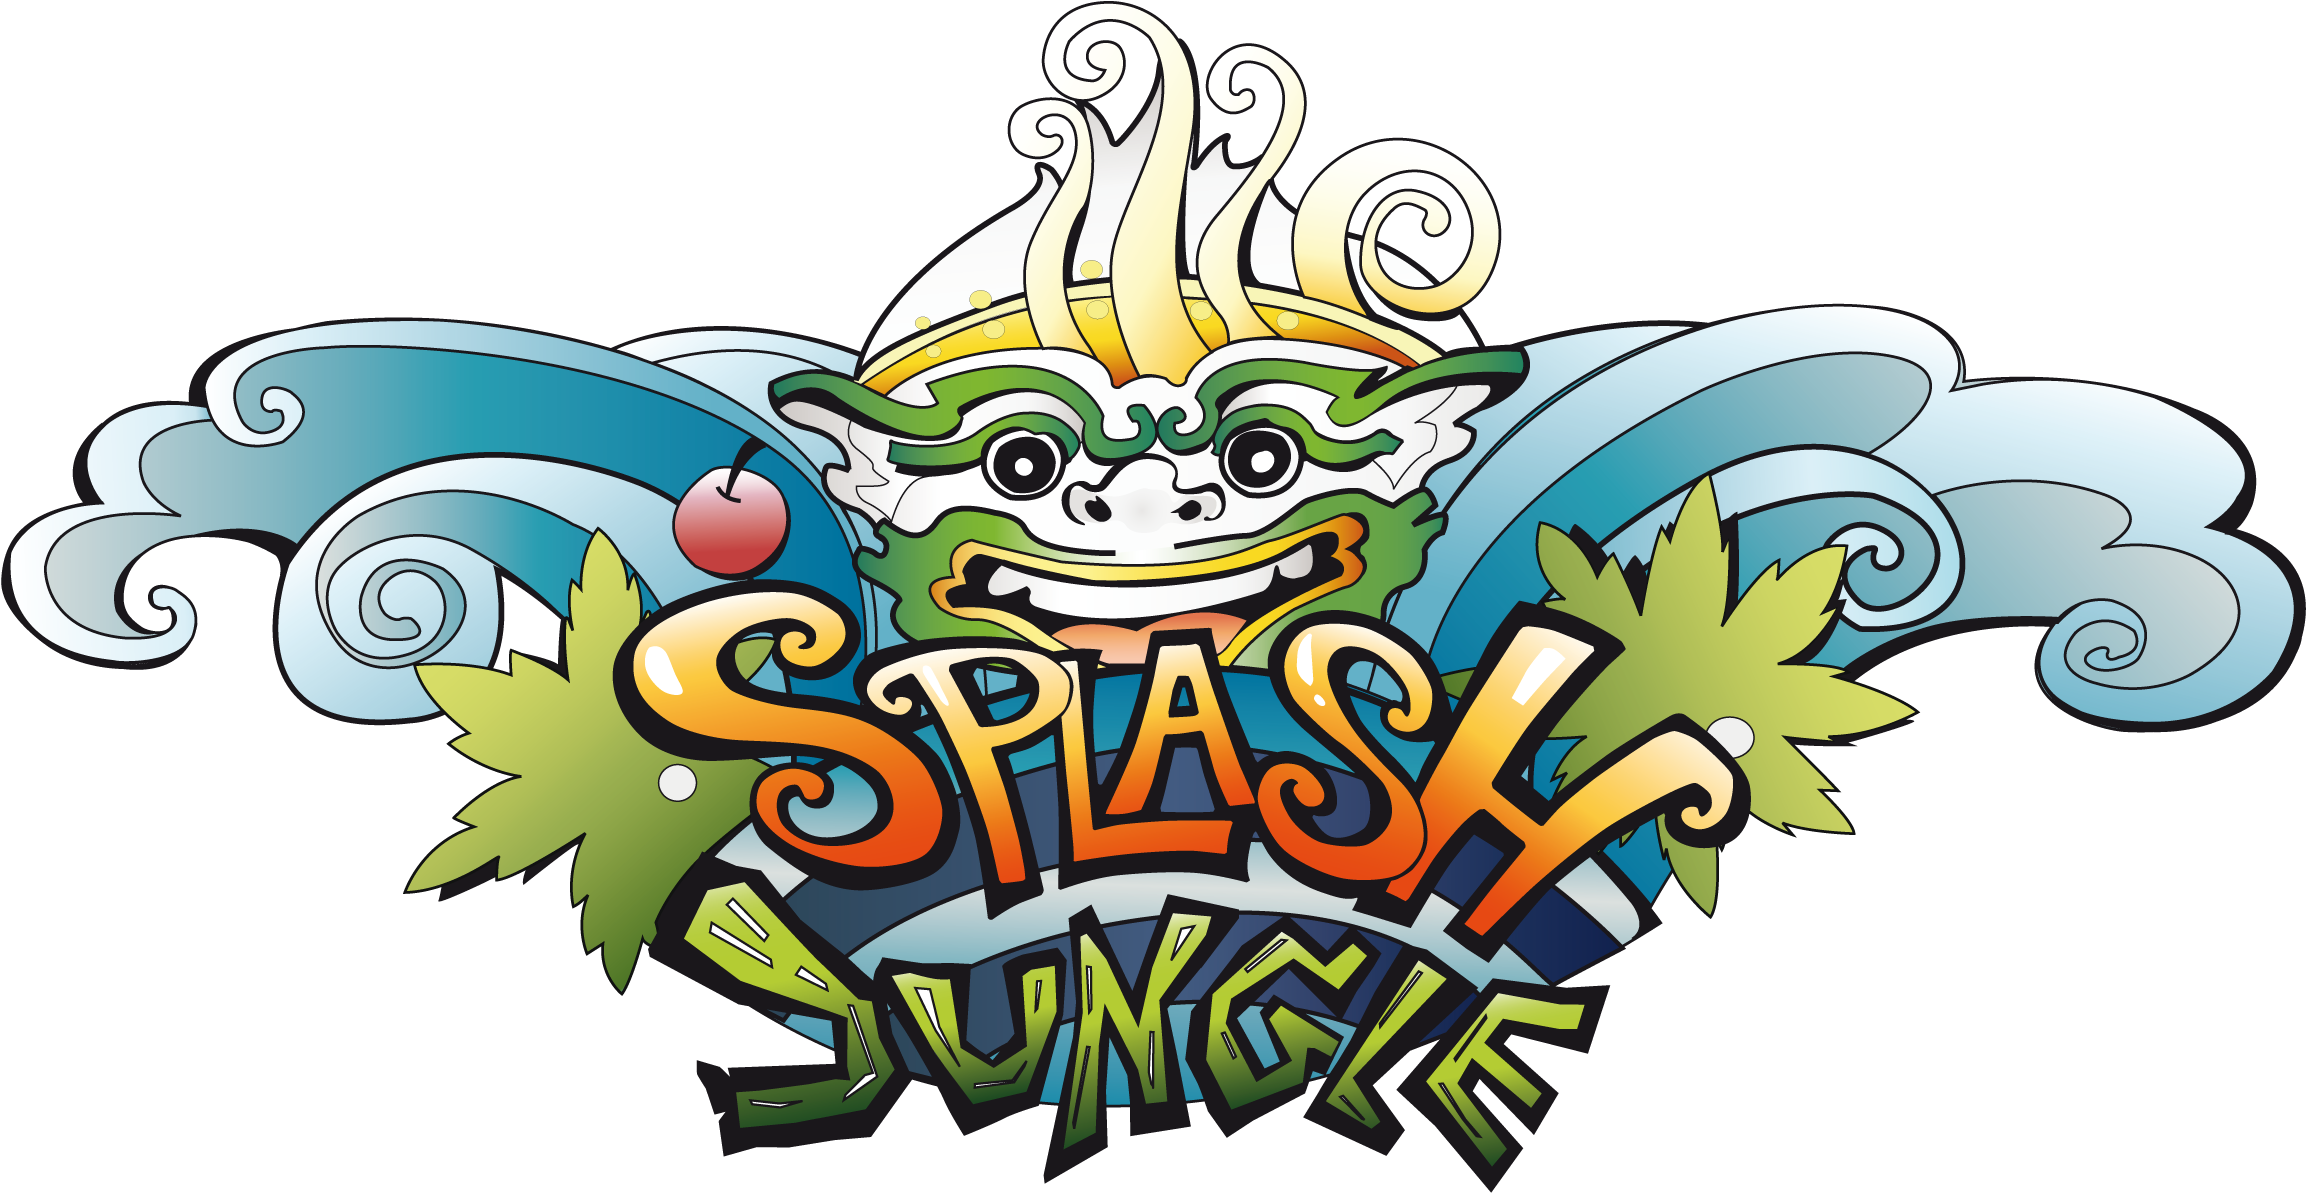 Splash Jungle Logo Use - Splash Jungle (2362x1242)